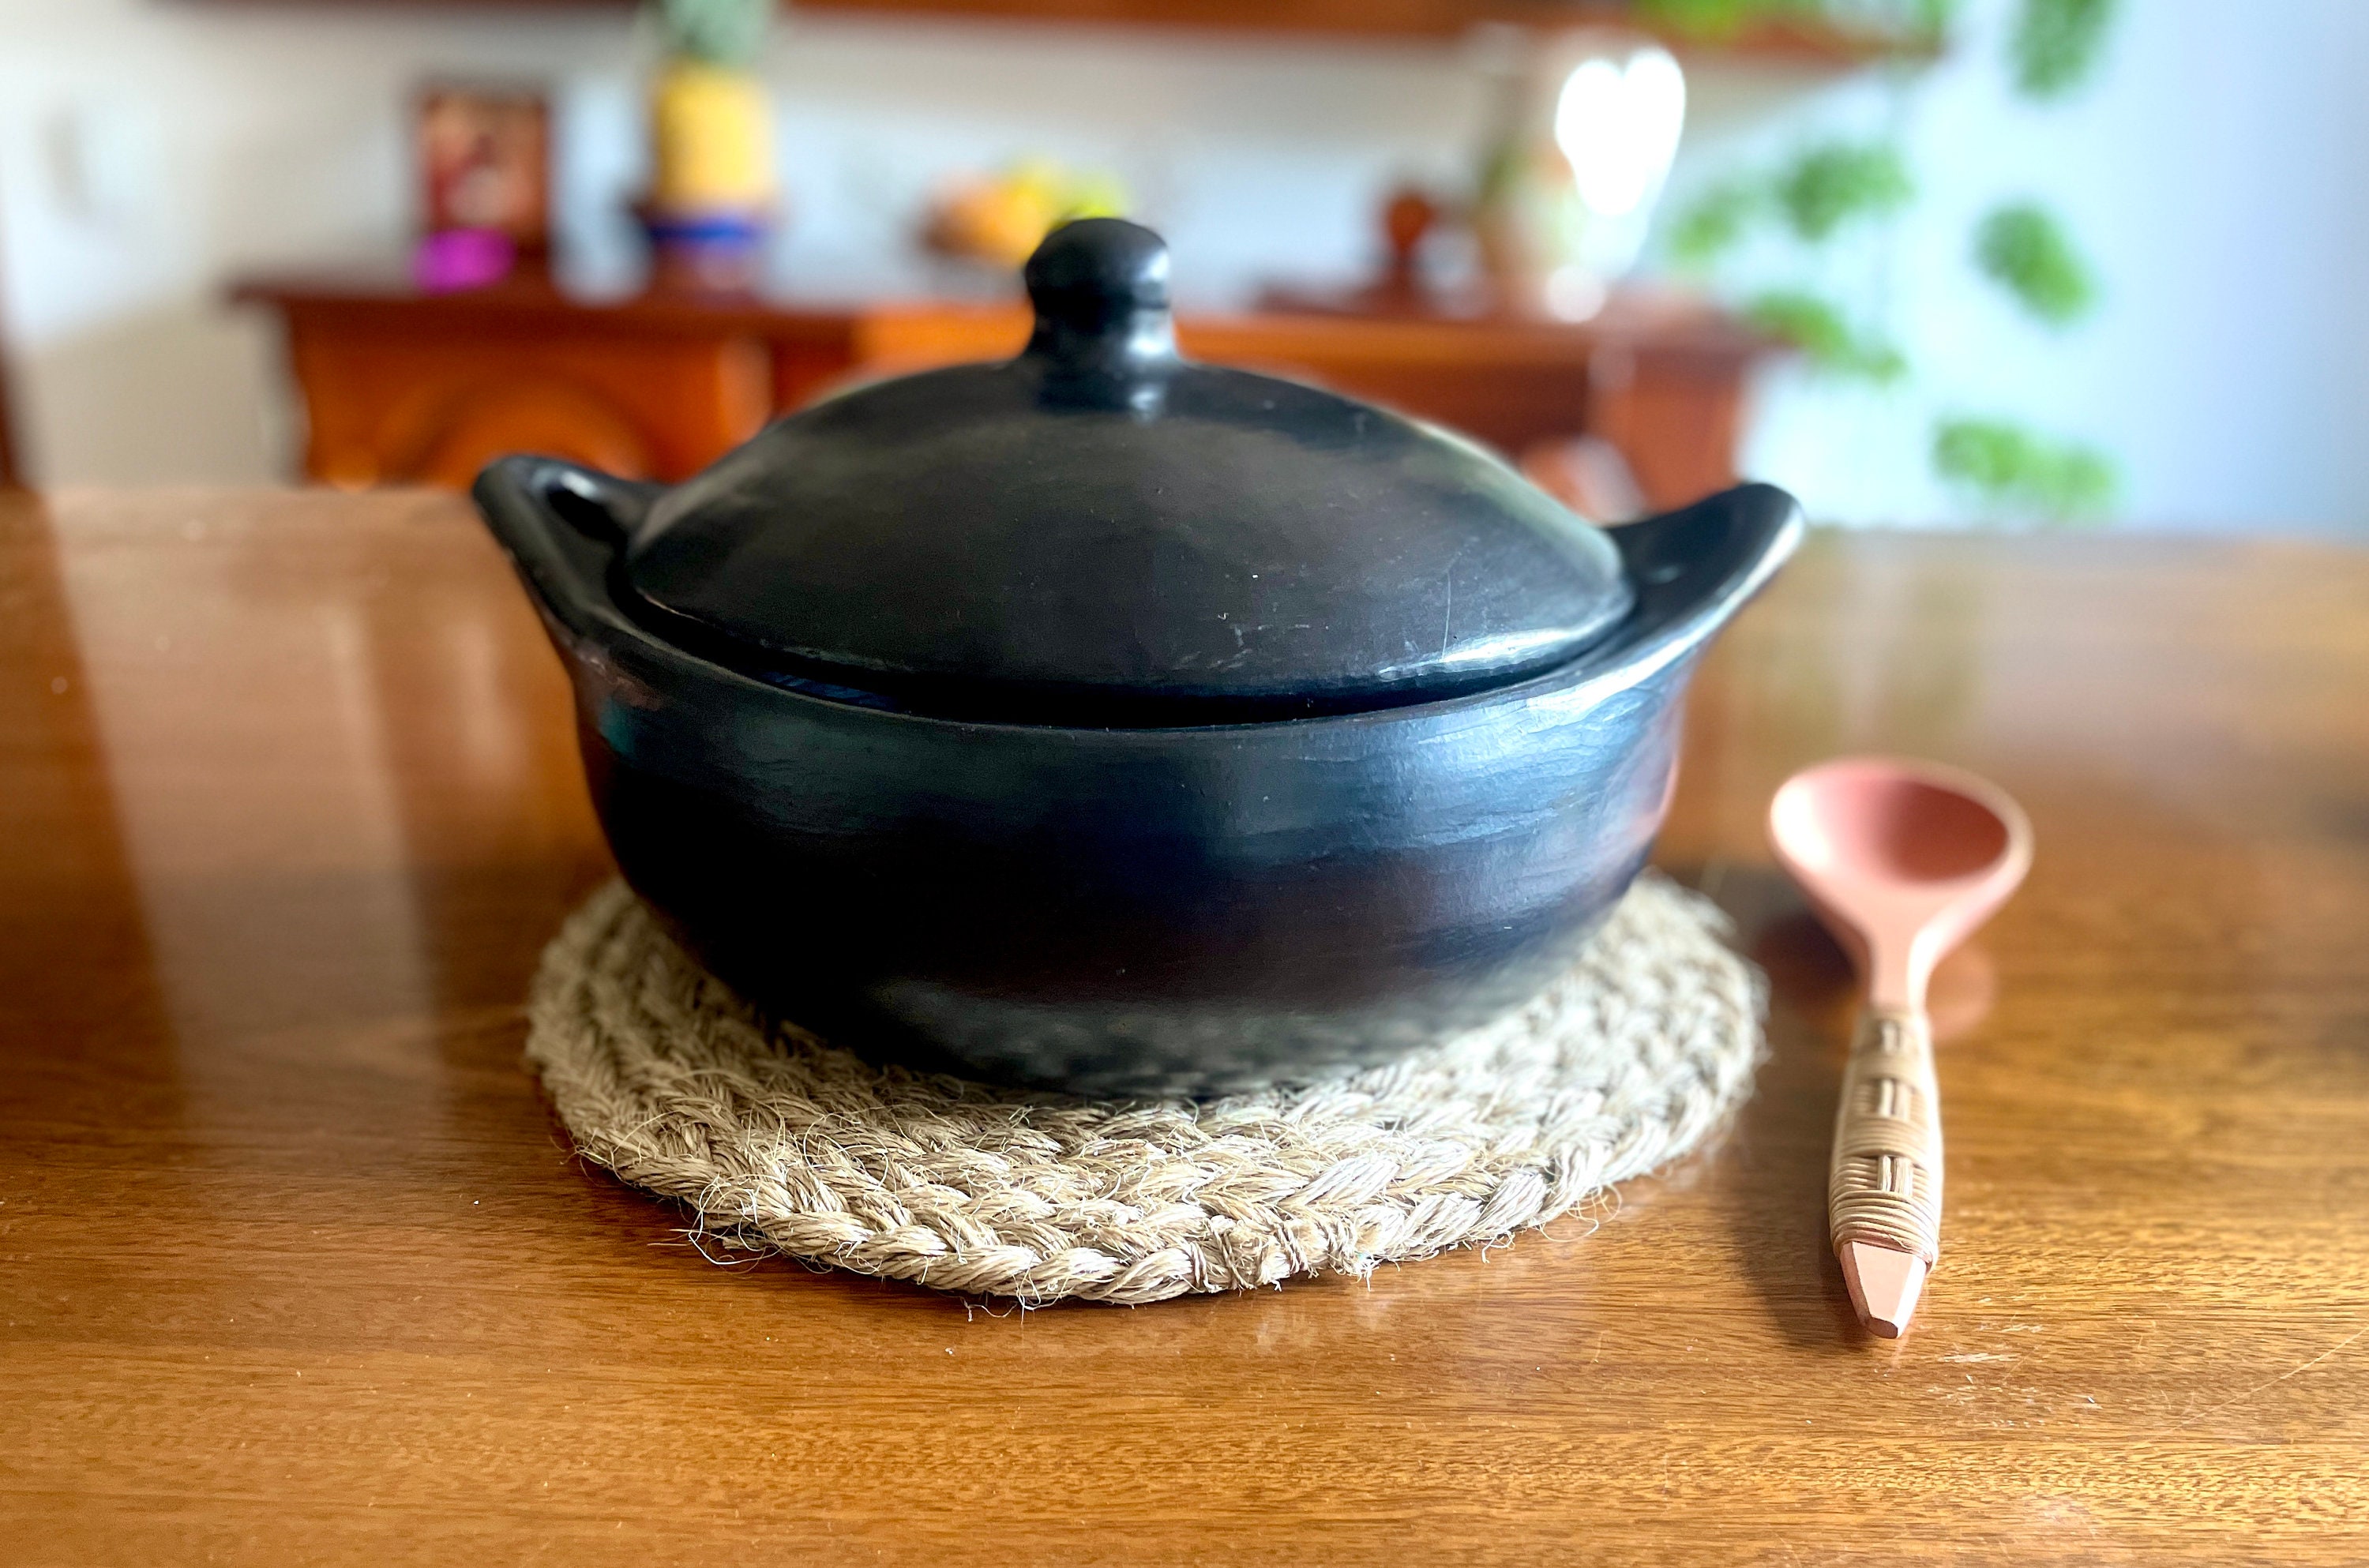  Ancient Cookware, Plancha mexicana de arcilla comal